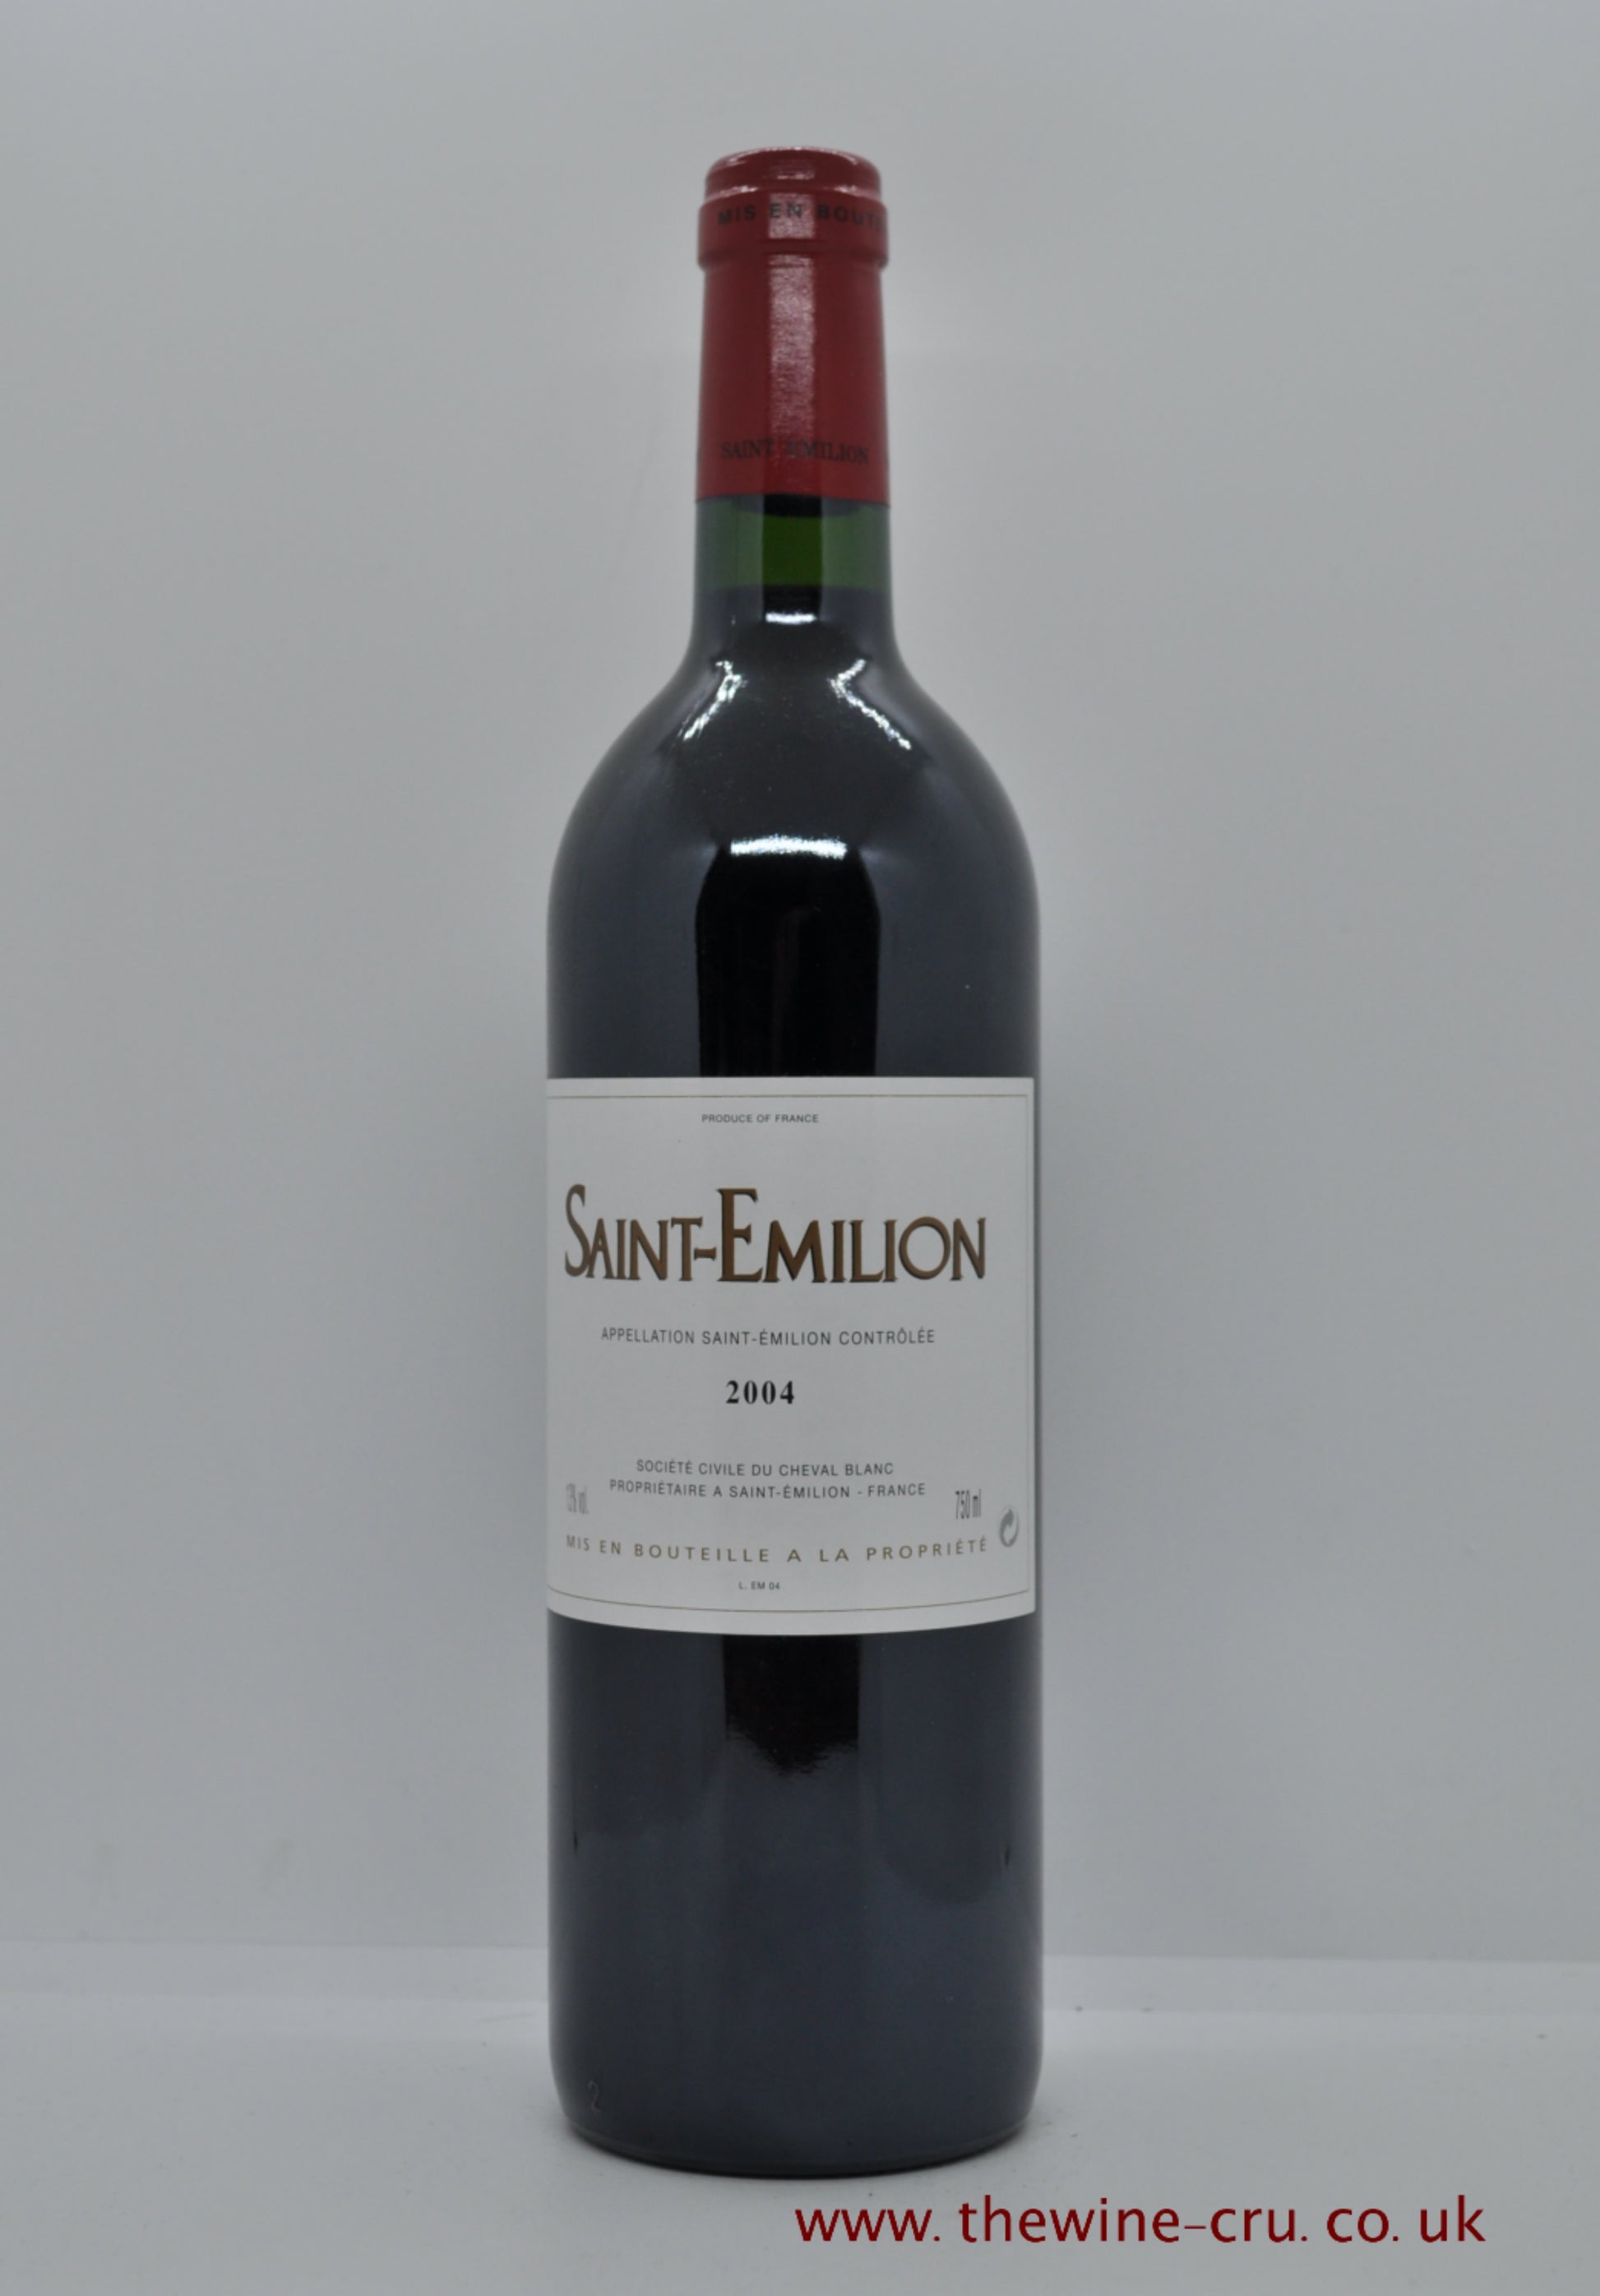 Saint Emilion Society Civile Du Cheval Blanc 2004 France Bordeaux